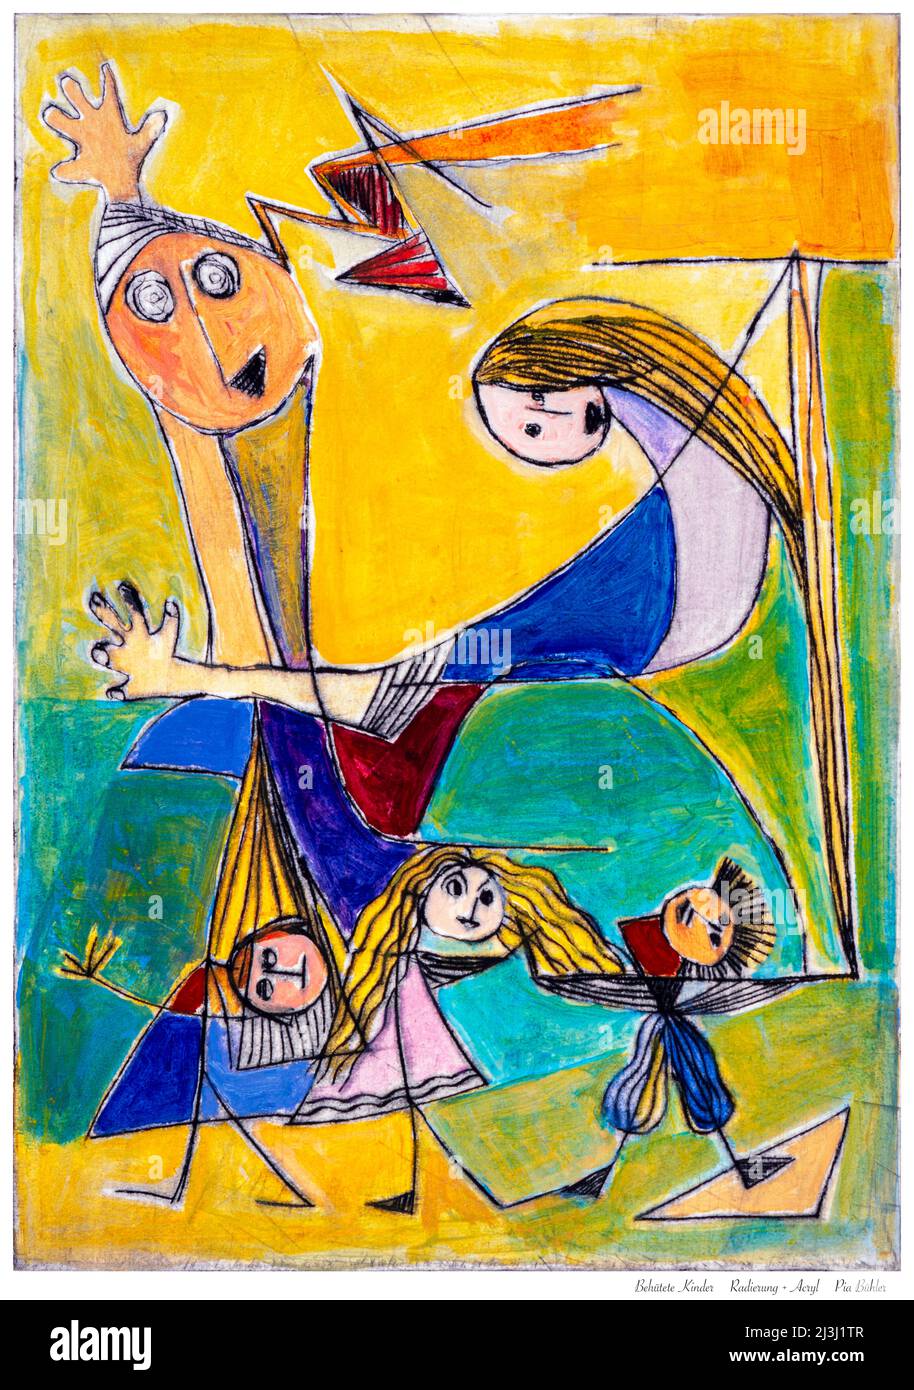 Gemälde von Pia Bühler, Radierung, Acryl Vater und Mutter schützen ihre Kinder. Sie spielen und verbringen unbeschwerte Zeit miteinander. Stockfoto